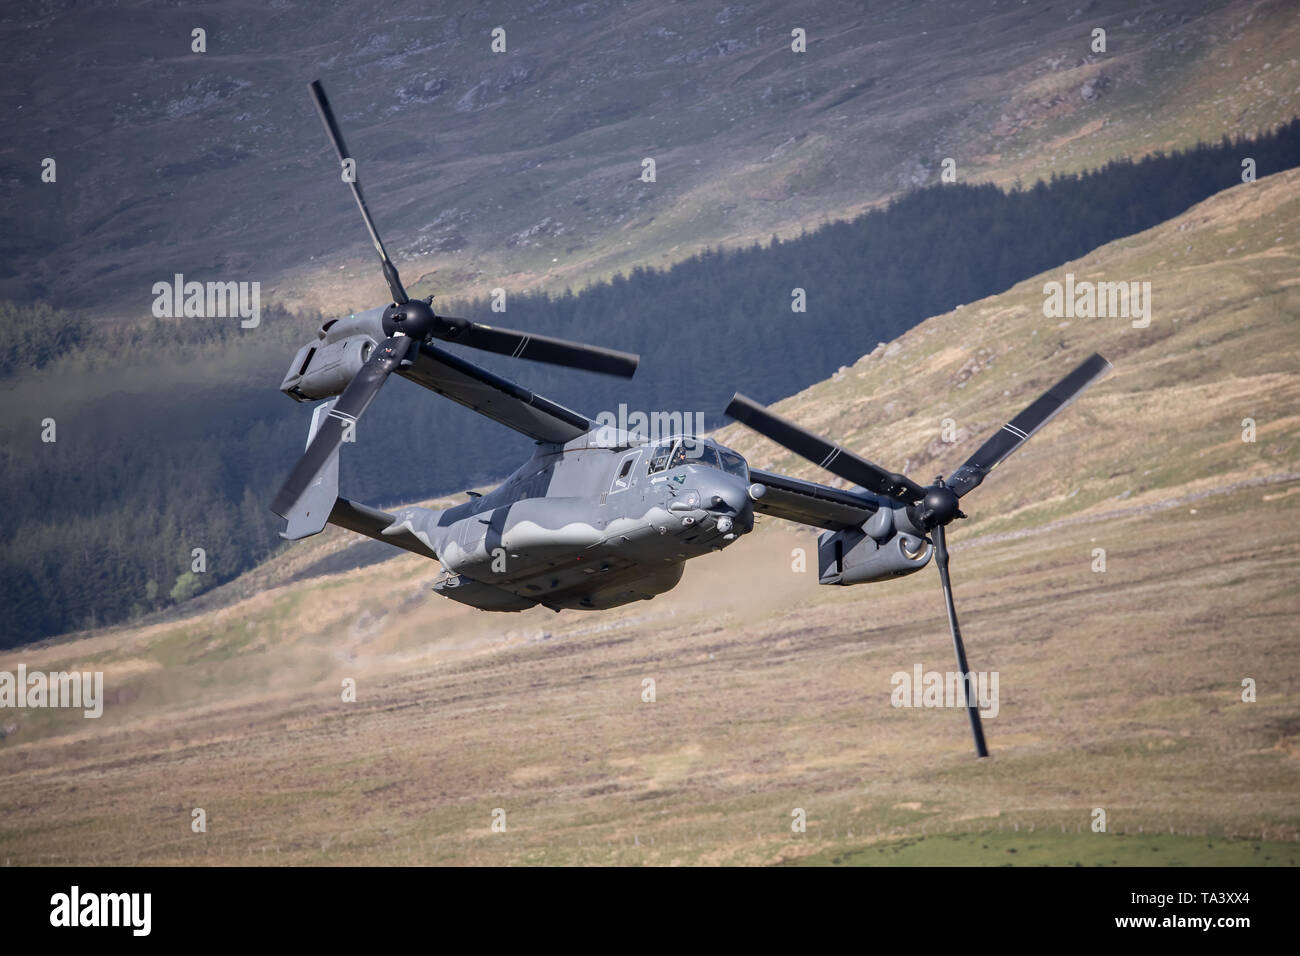 Un CV22 Osprey Bell-Boeing USAF fait un faible niveau passent par Mach Loop, près de Dolgellau, Pays de Galles, Royaume-Uni. Banque D'Images